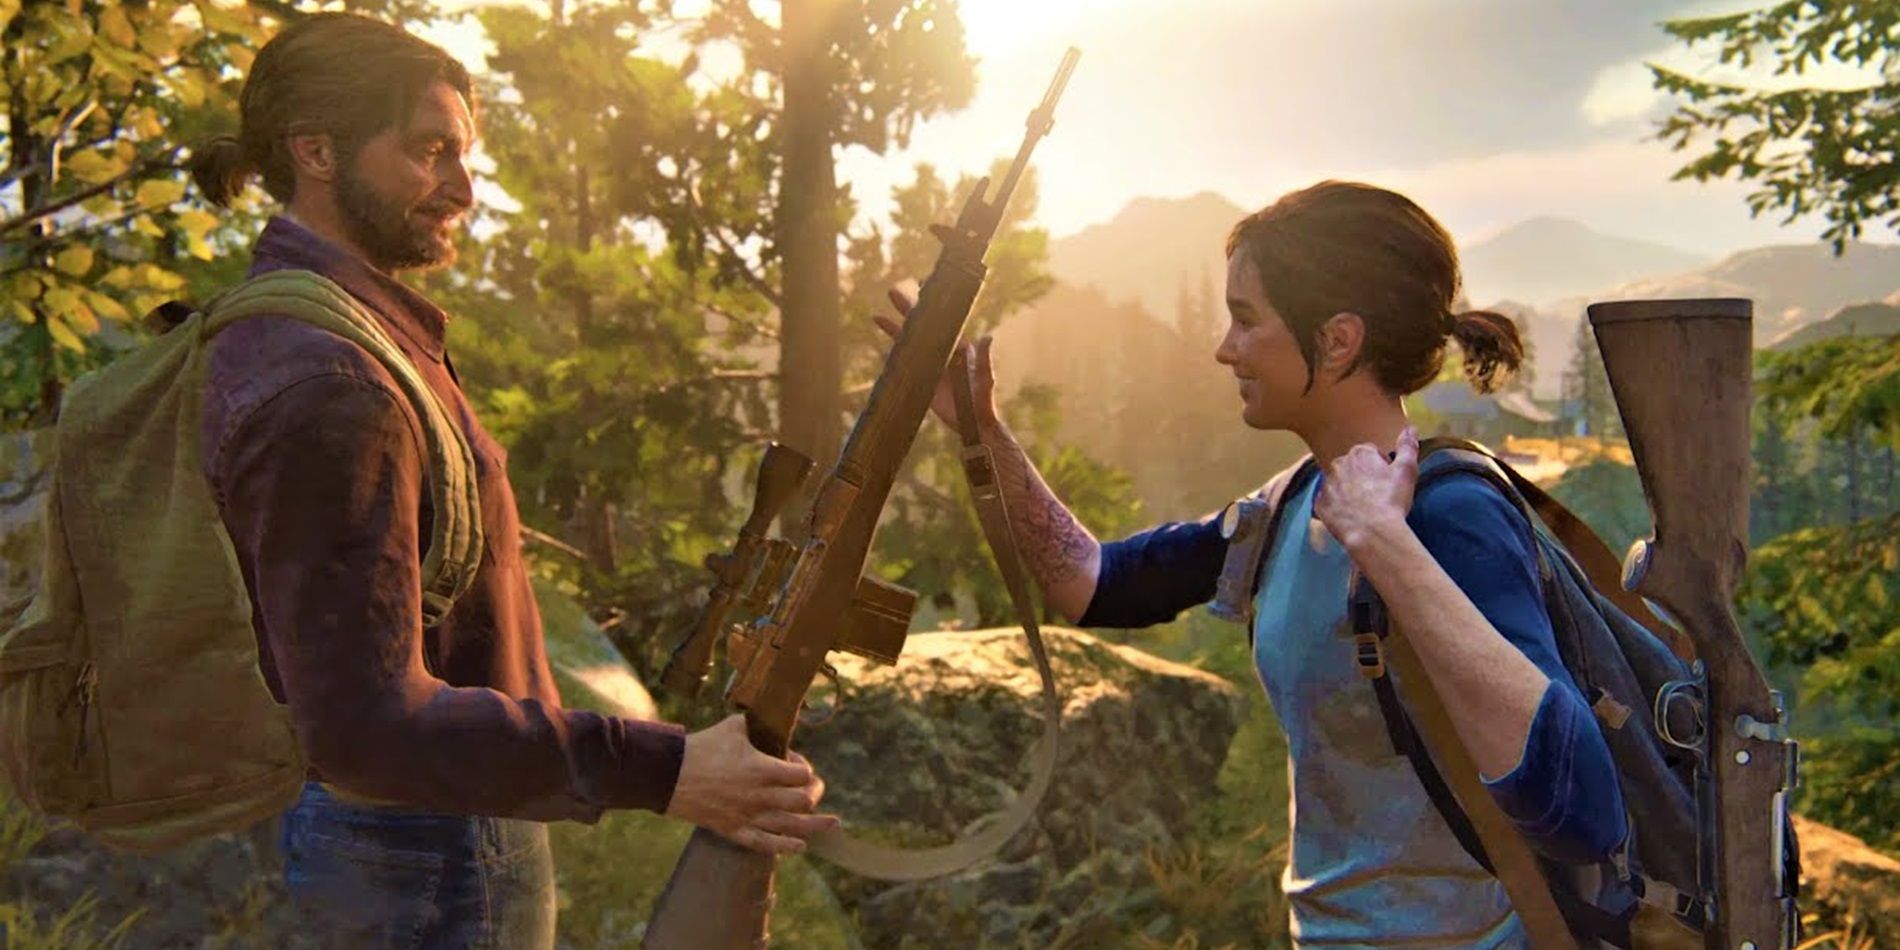 Tommy entrega a Ellie um rifle de precisão em The Last of Us Part II